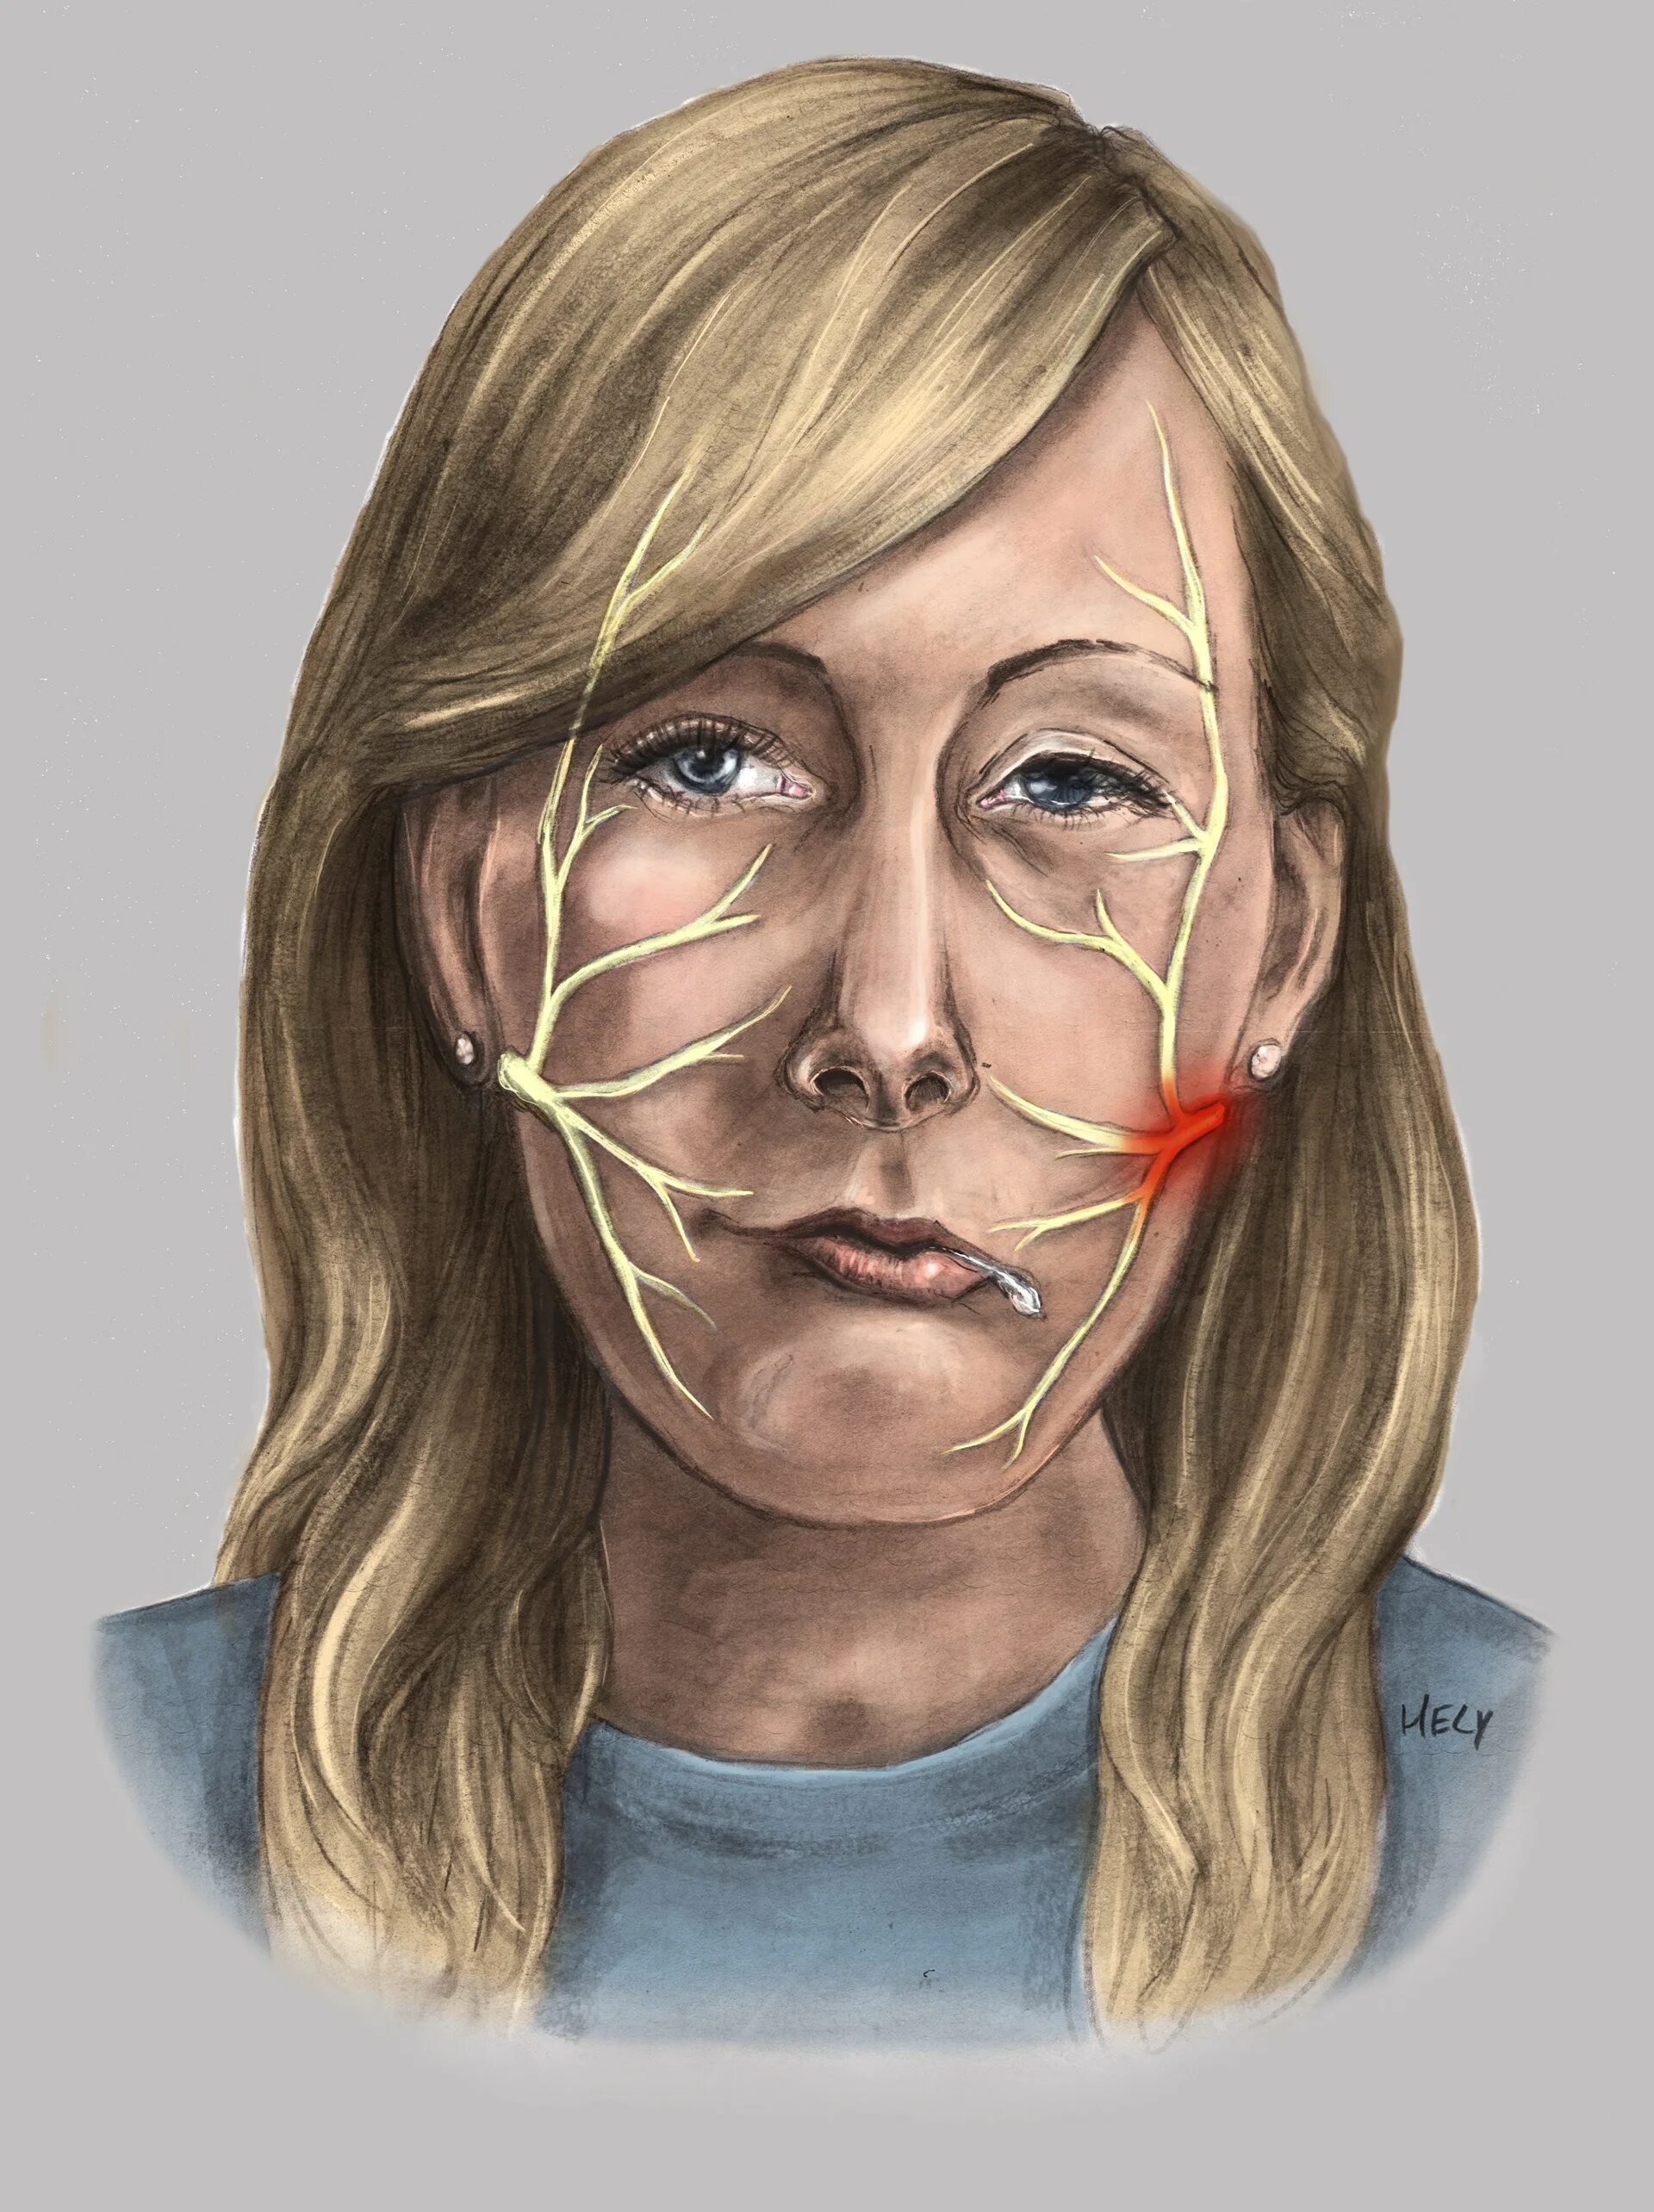 Тройничный нерв на лице. Гипестезия тройничного нерва. Неврит тройничного нерва. Ганглионит узла коленца лицевого нерва.